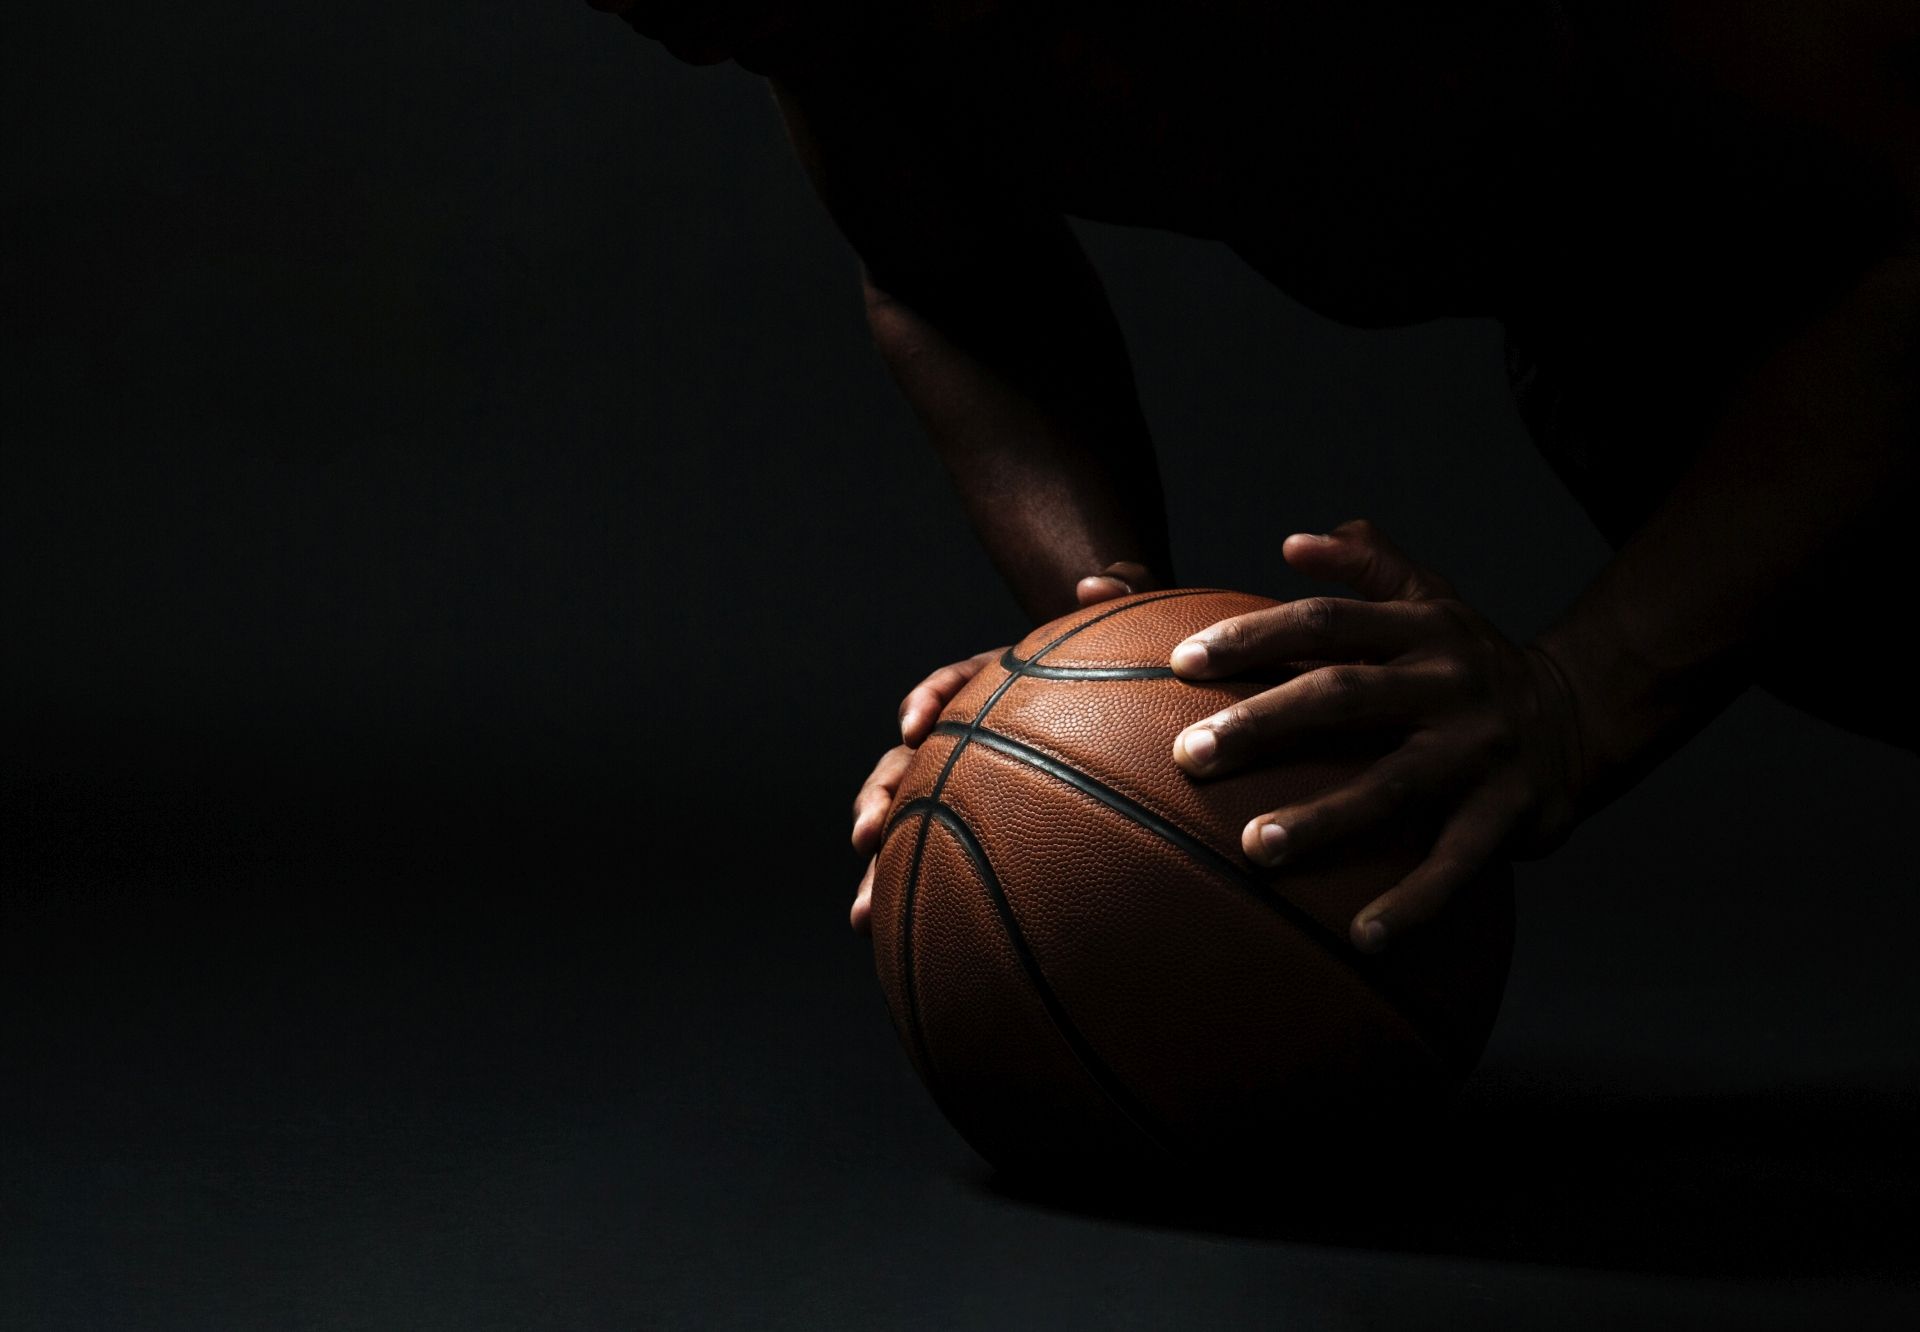 piłka do koszykówki w cieniu trzymana przez dłonie ciemnoskórej osoby 